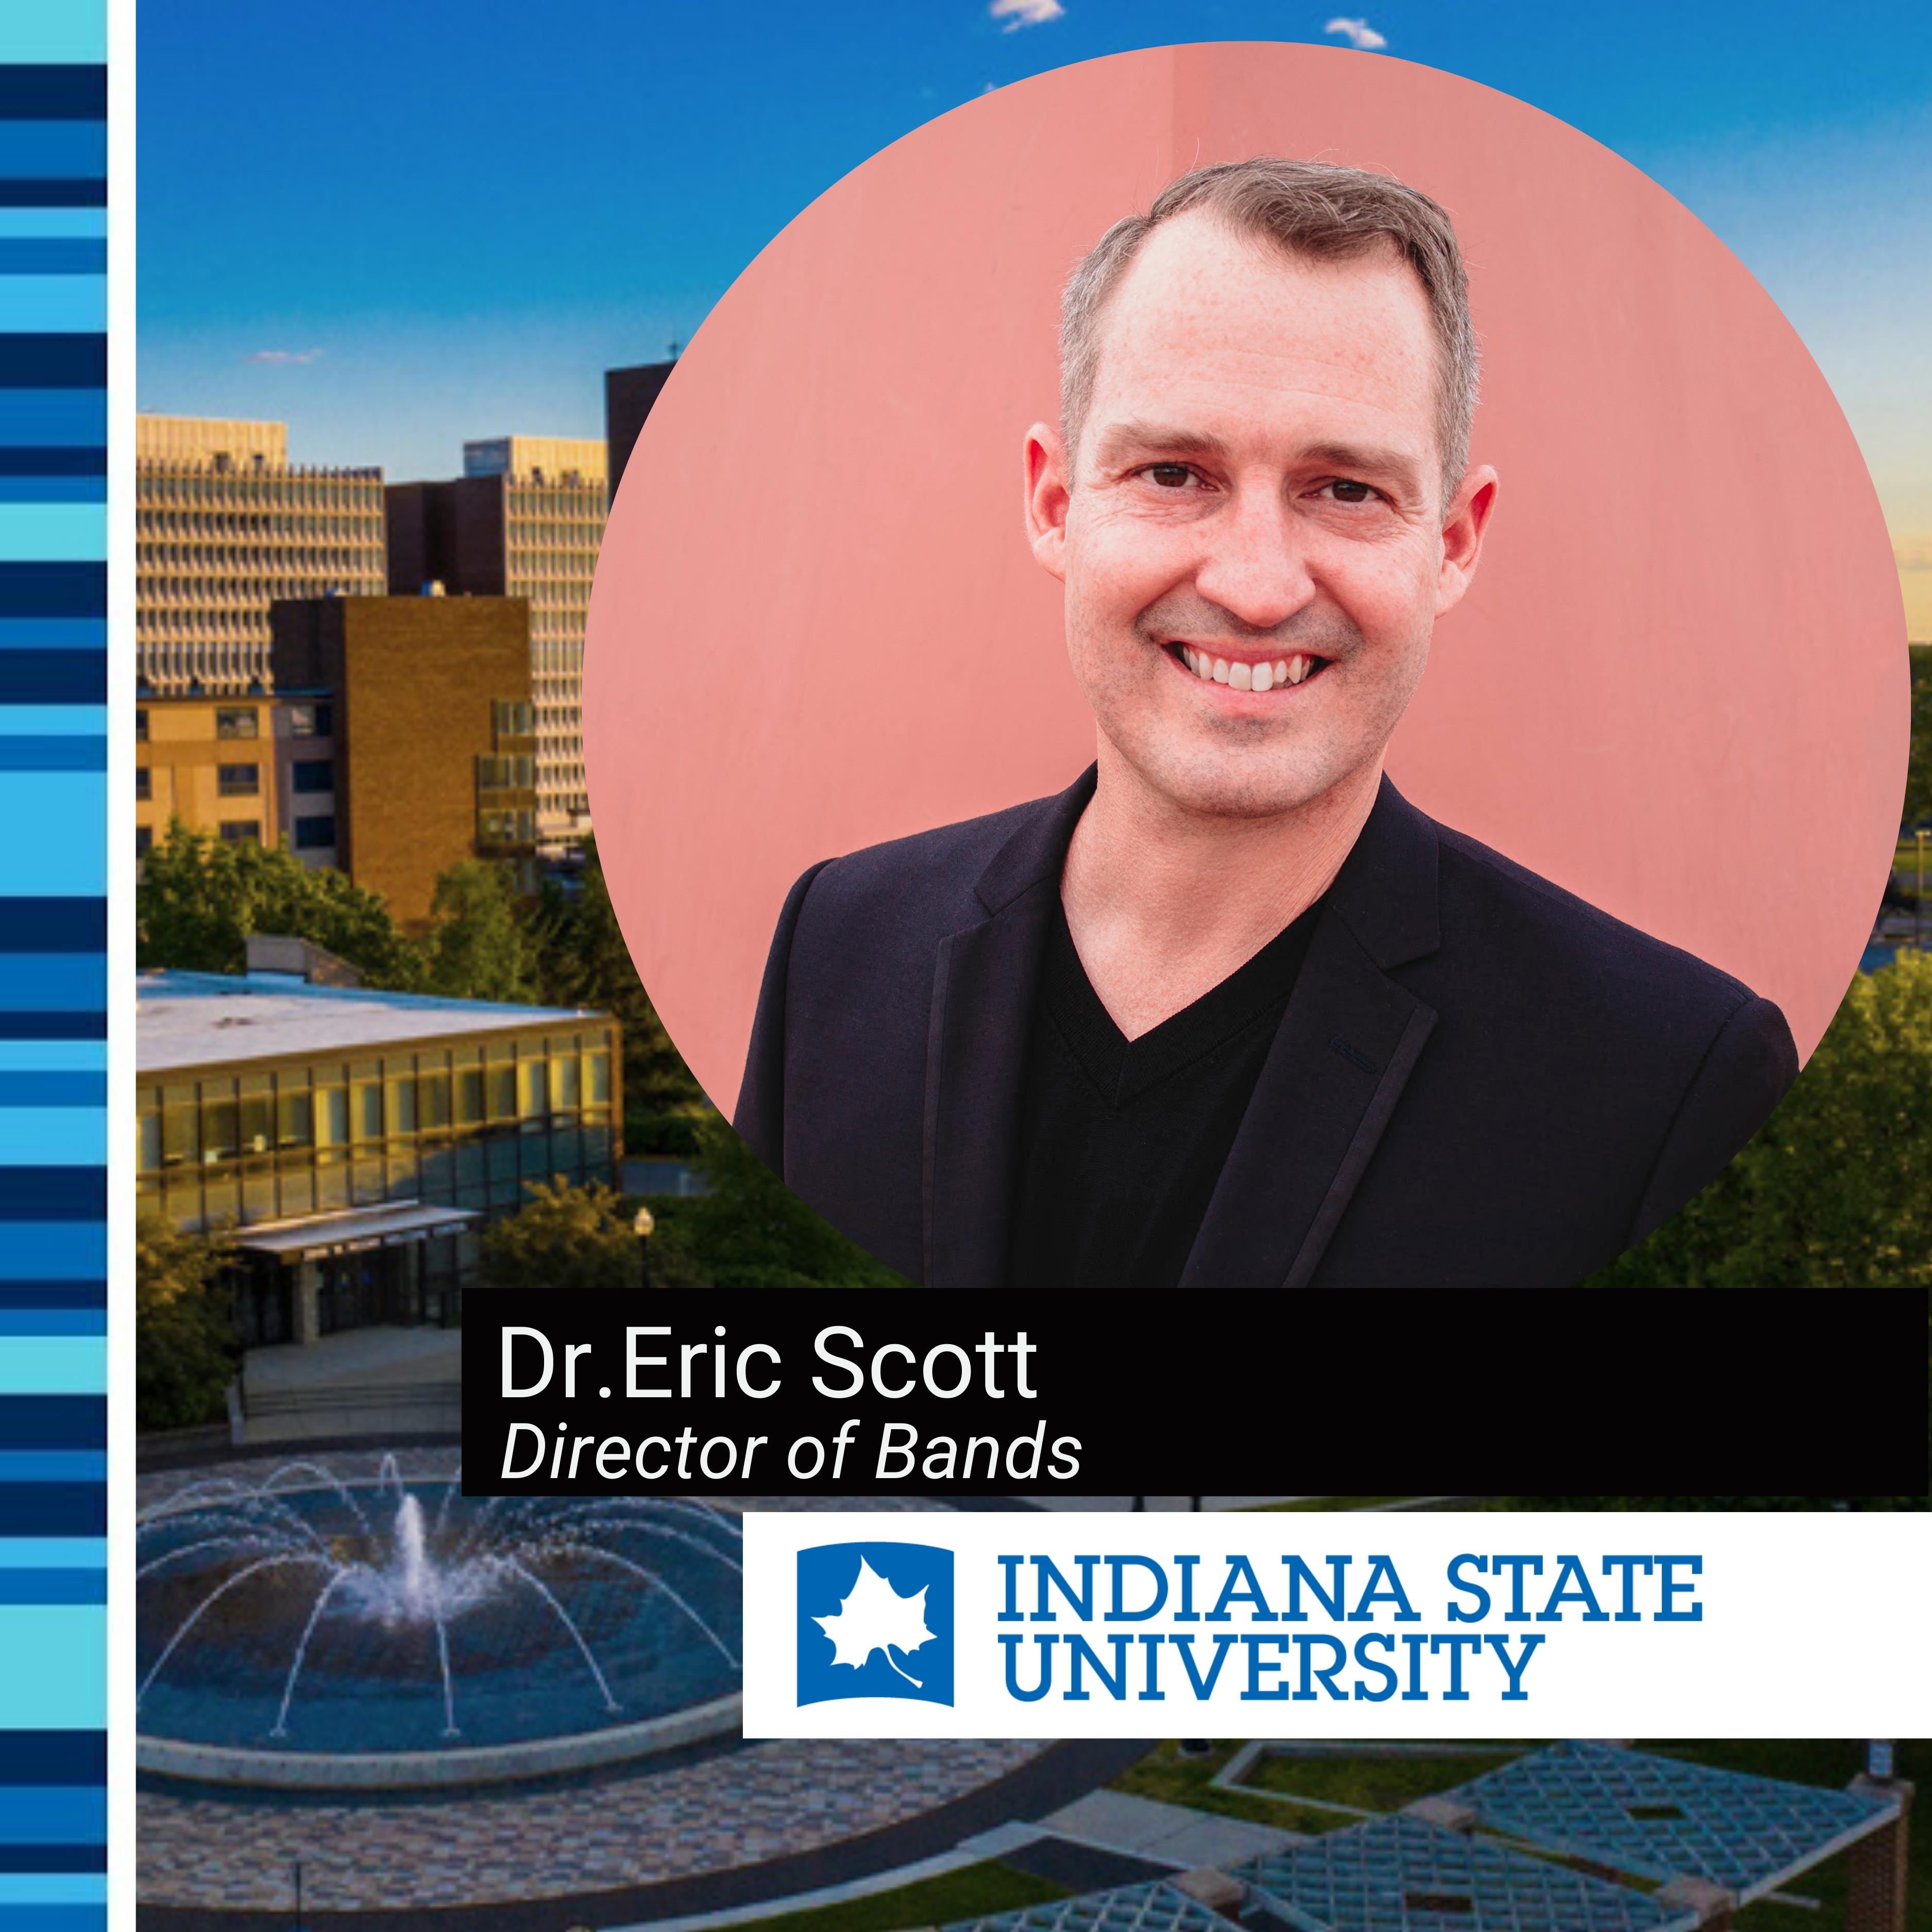 Dr. Eric Scott